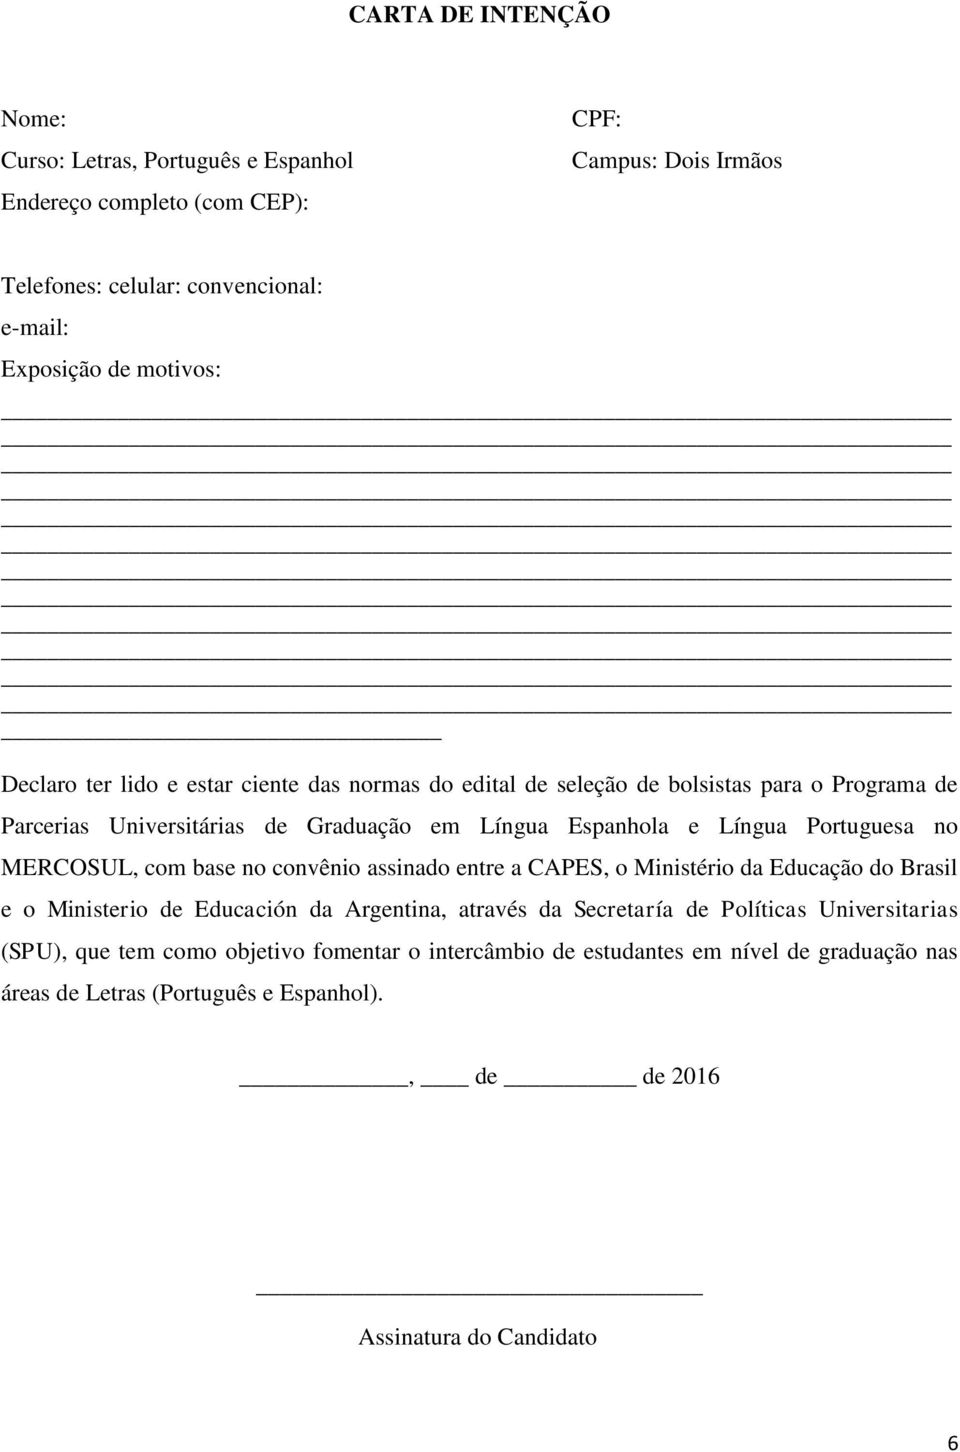 Portuguesa no MERCOSUL, com base no convênio assinado entre a CAPES, o Ministério da Educação do Brasil e o Ministerio de Educación da Argentina, através da Secretaría de